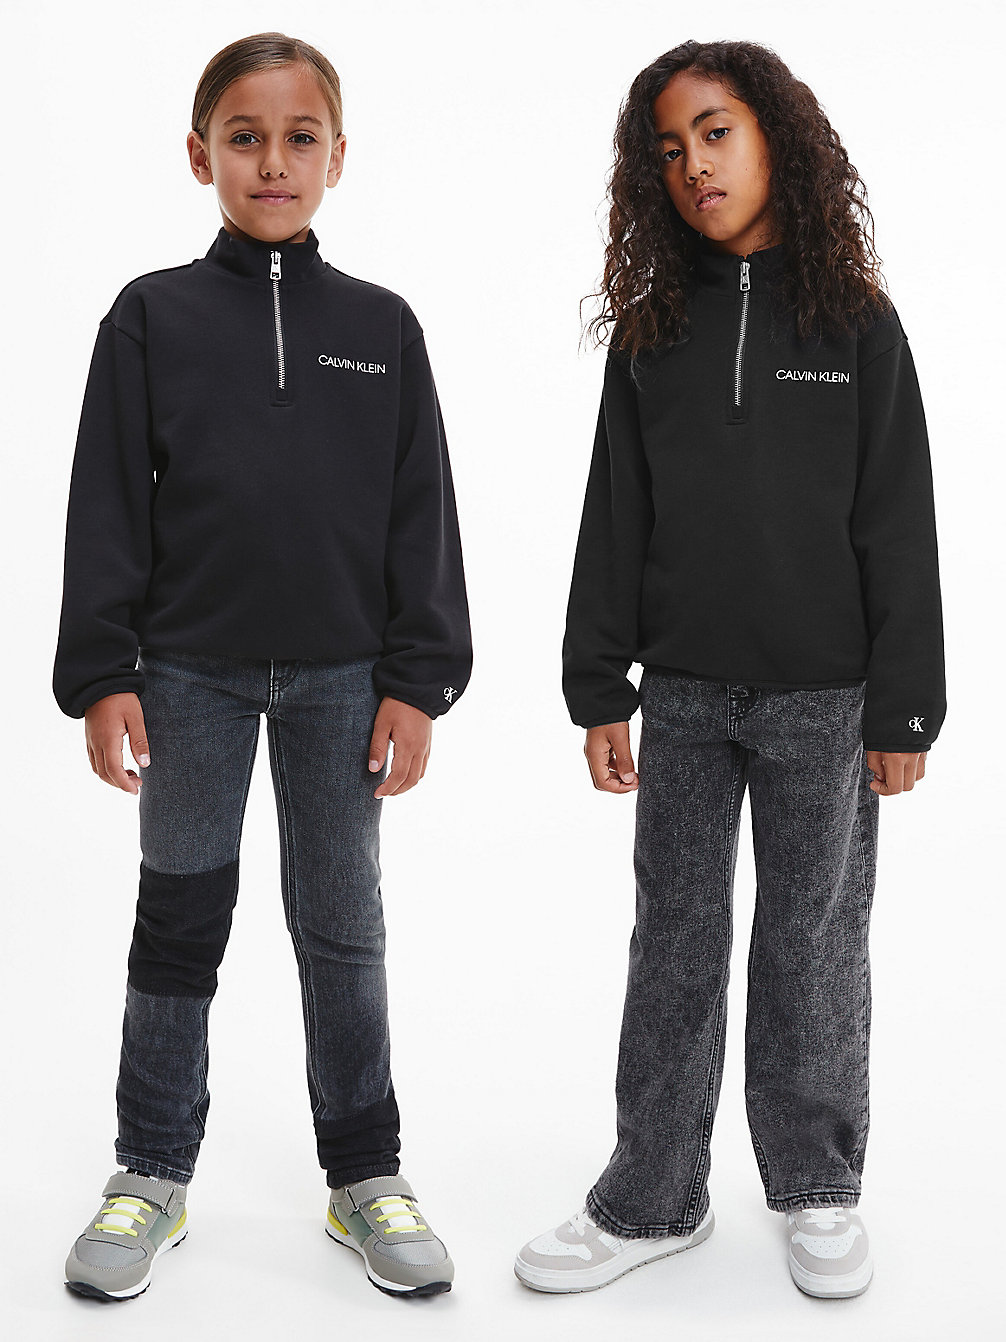 CK BLACK Lässiges Unisex Sweatshirt Mit Reißverschlusskragen undefined kids unisex Calvin Klein